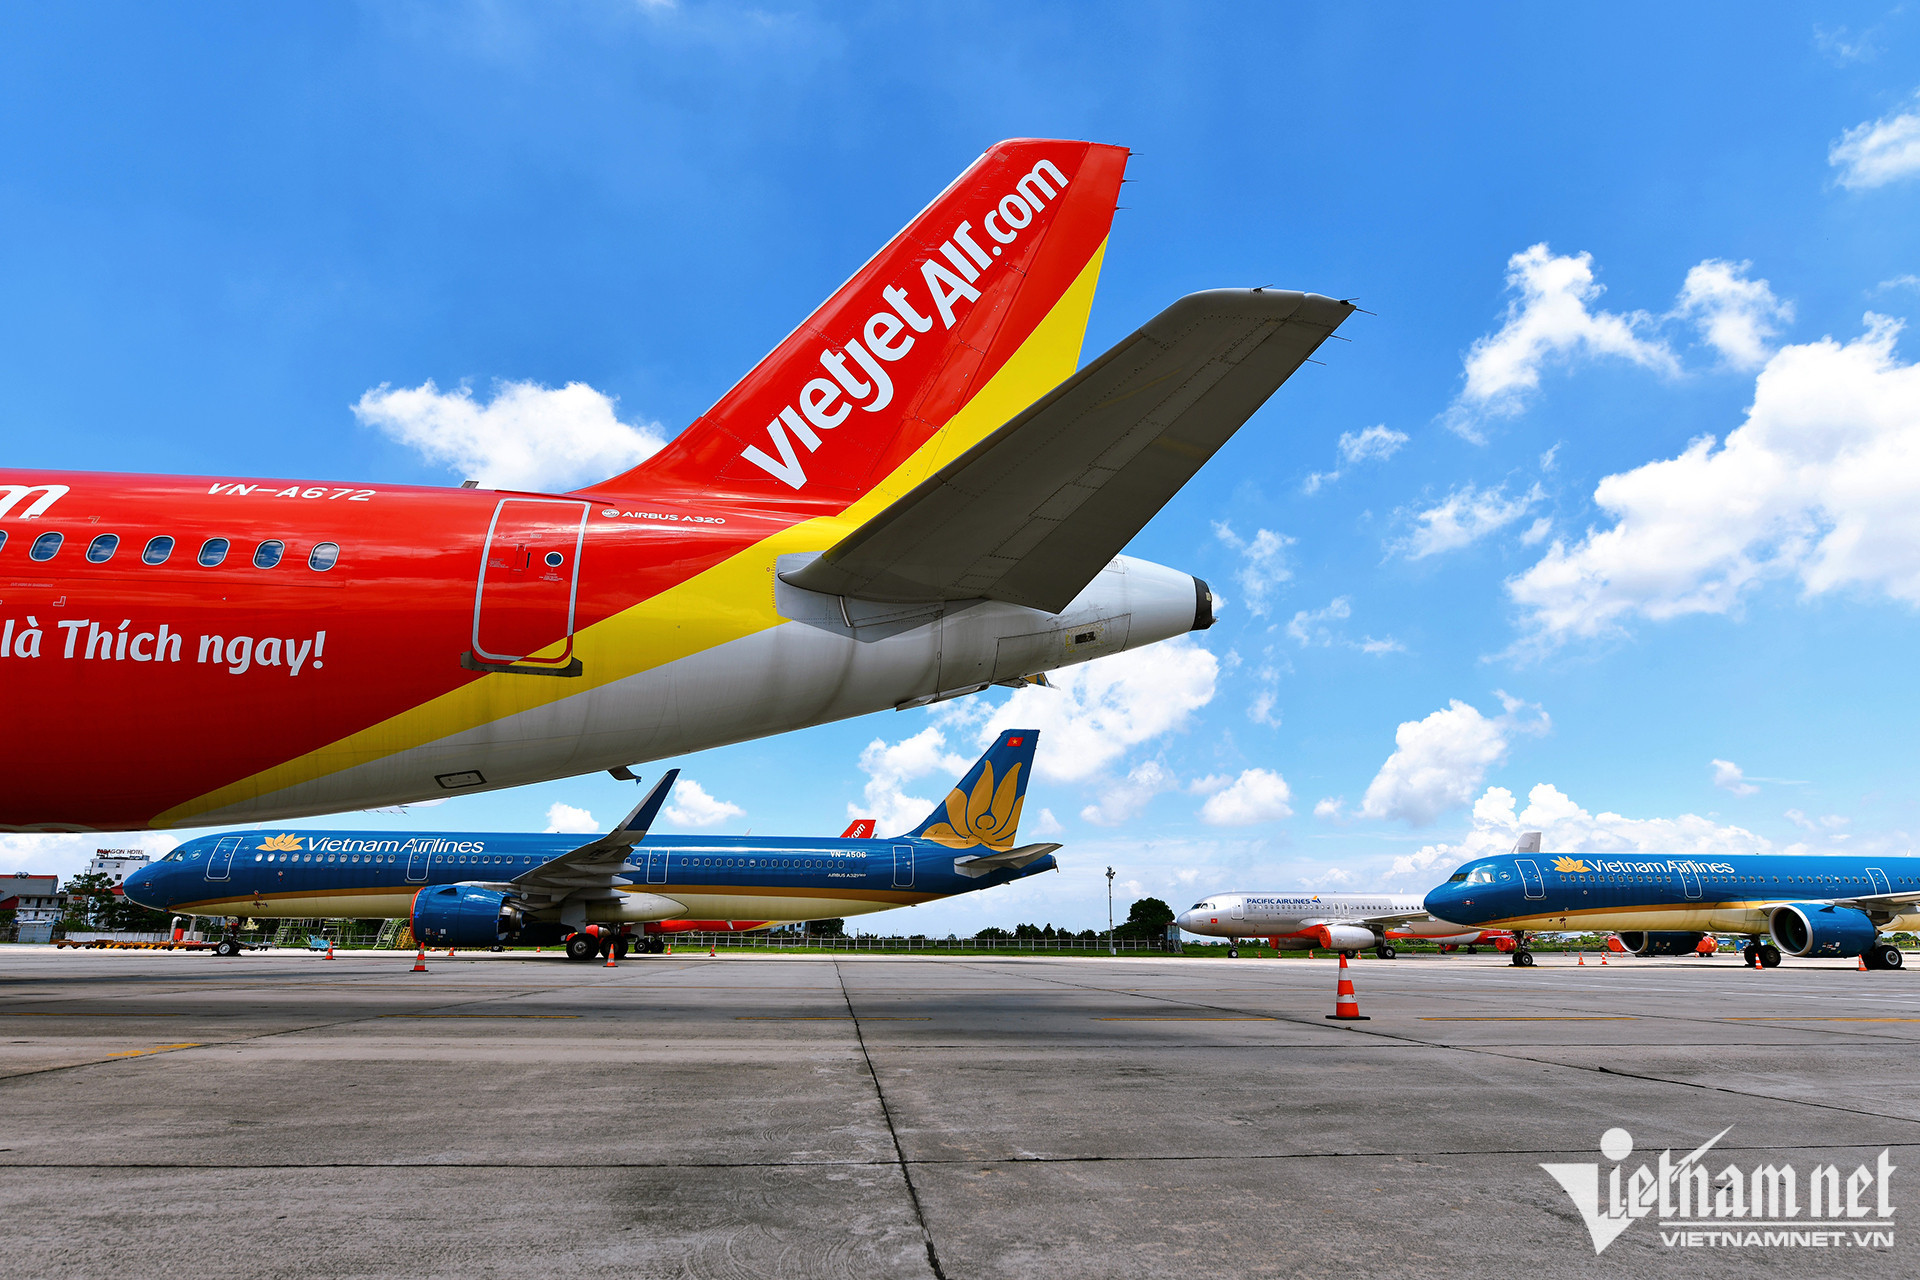 Vietjet reports profit, Vietnam Airlines sees losses drop